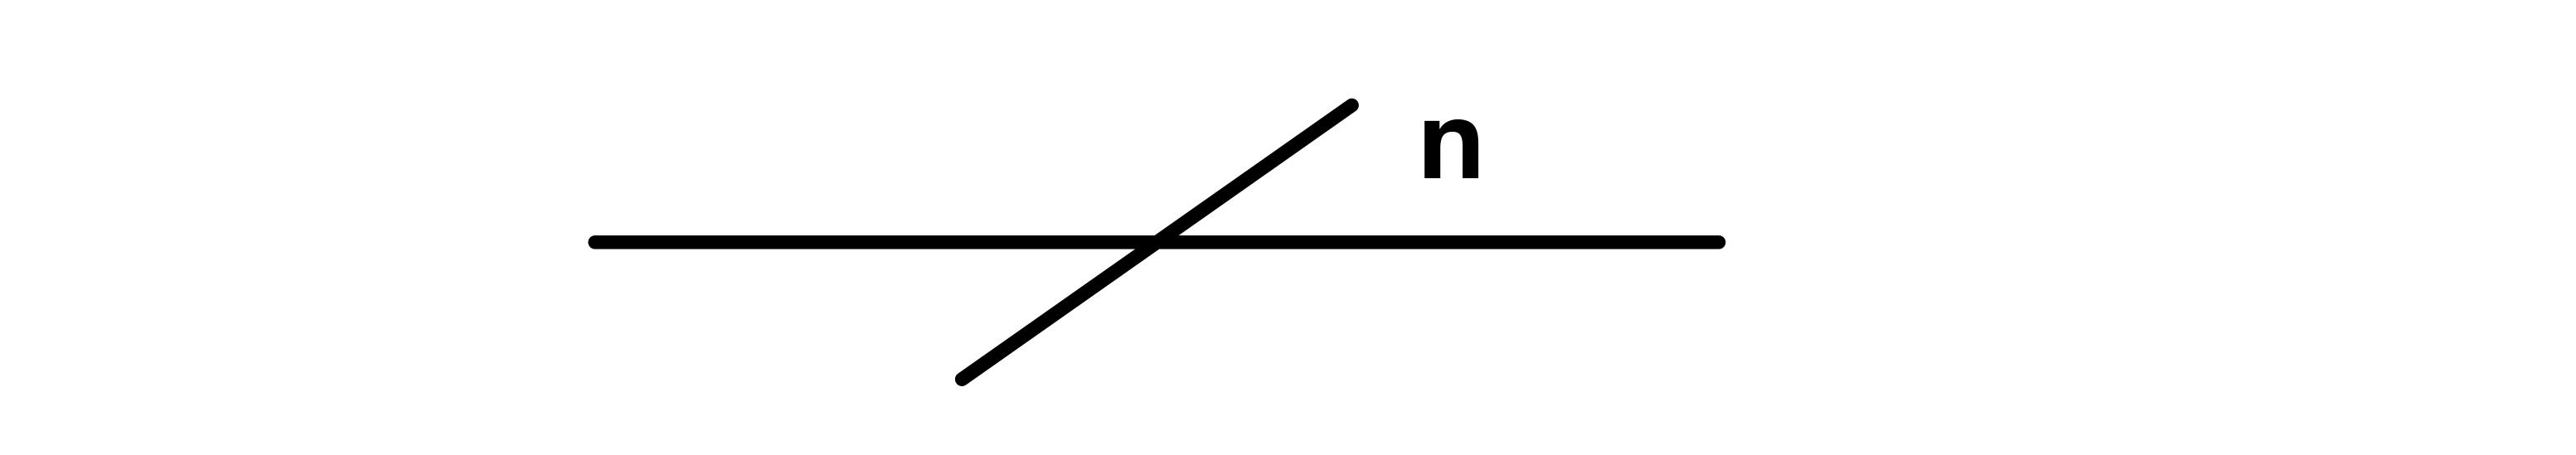 Figure 2: Bus notation (1/2)